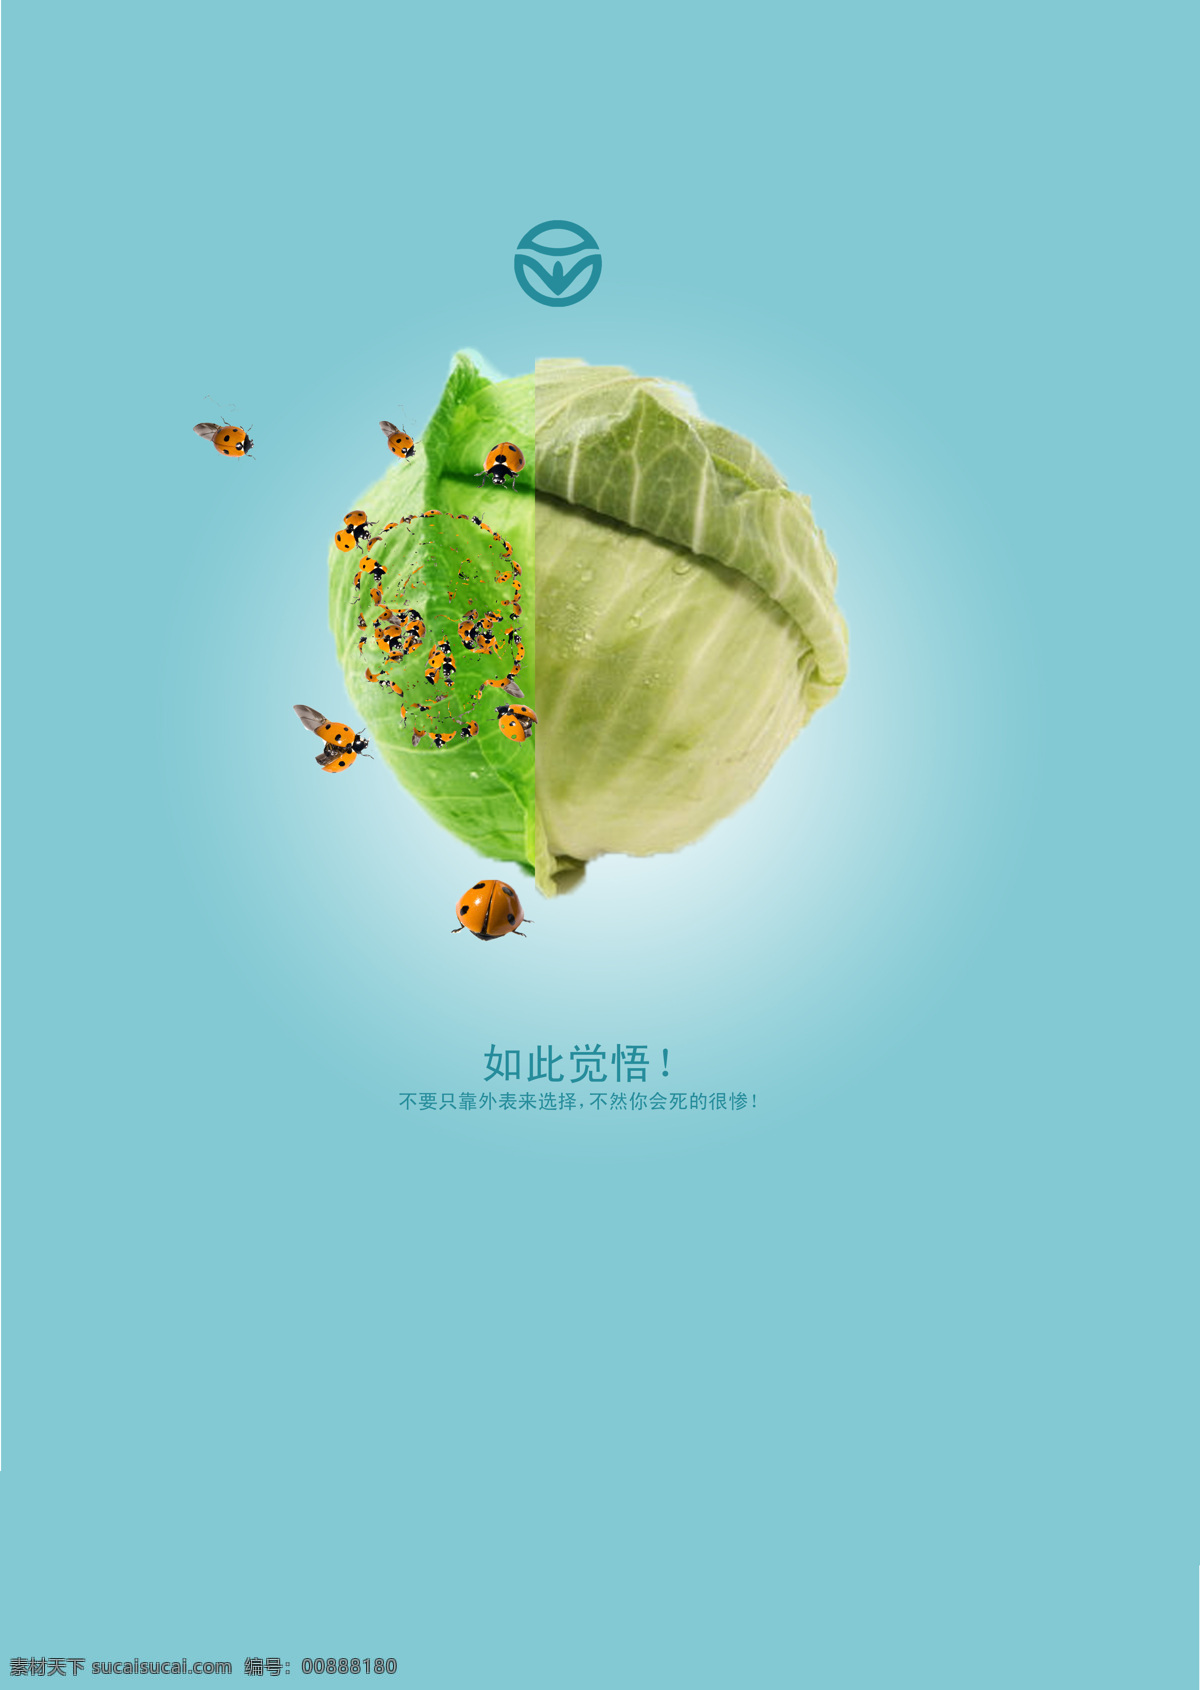 公益 广告 系列 白菜 广告系列 蓝底 绿色 绿色食品 瓢虫 公益广告系列 食品 招贴设计 展板 公益展板设计